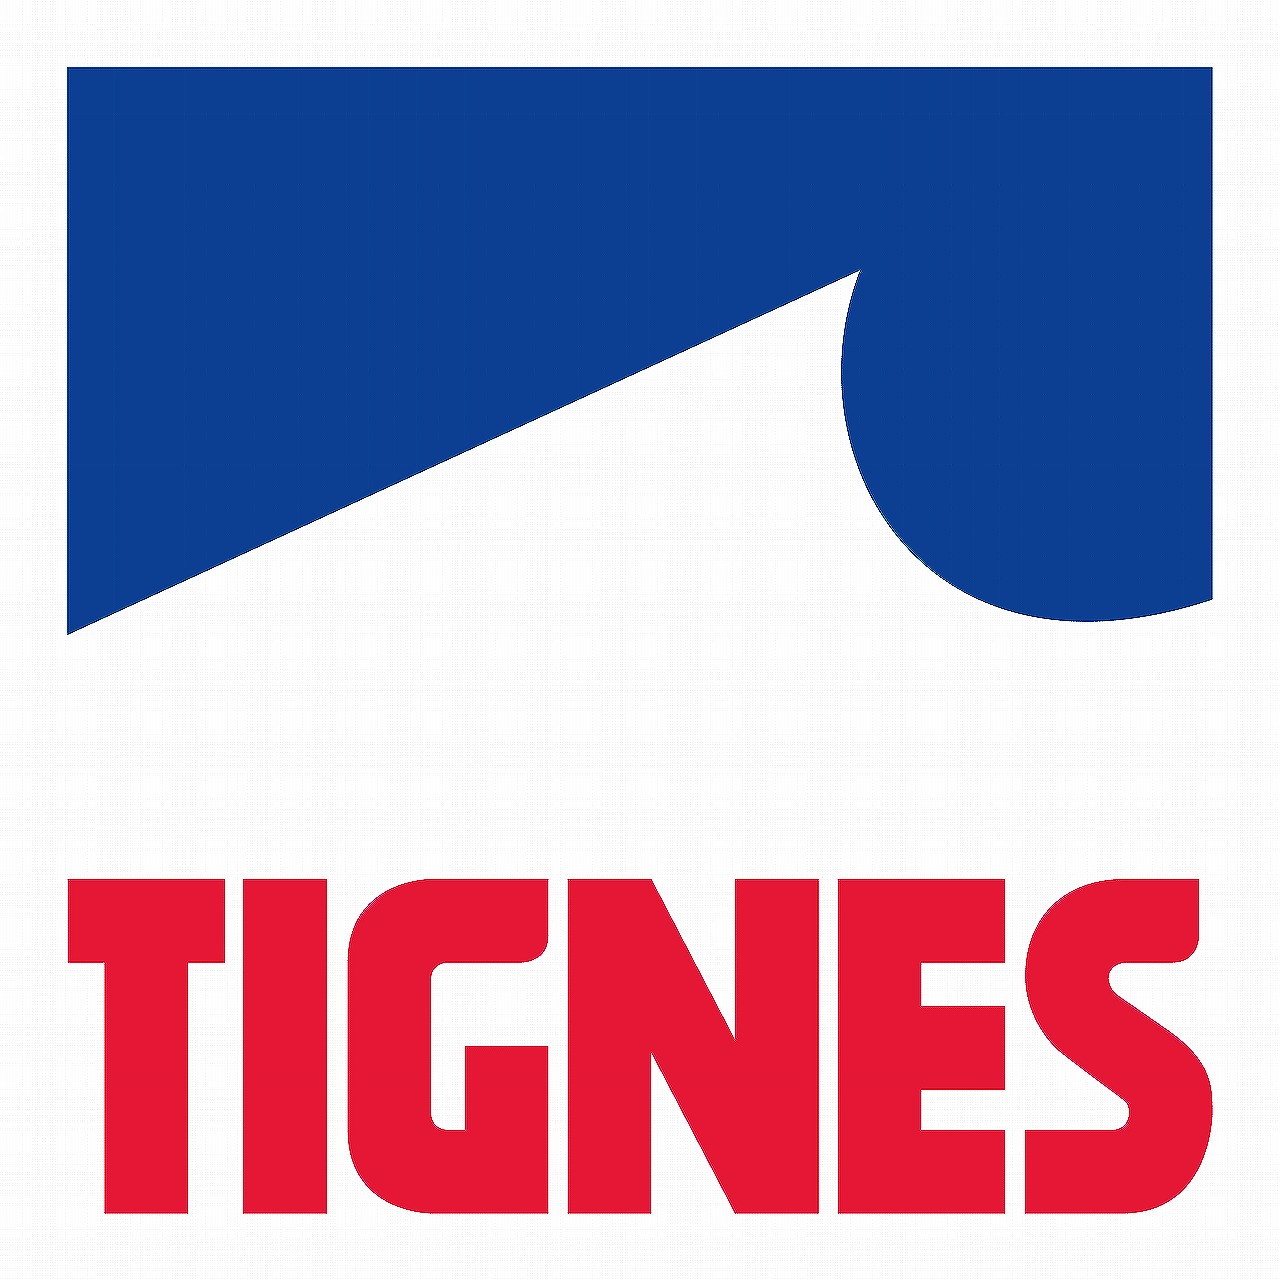 Tignes Logo